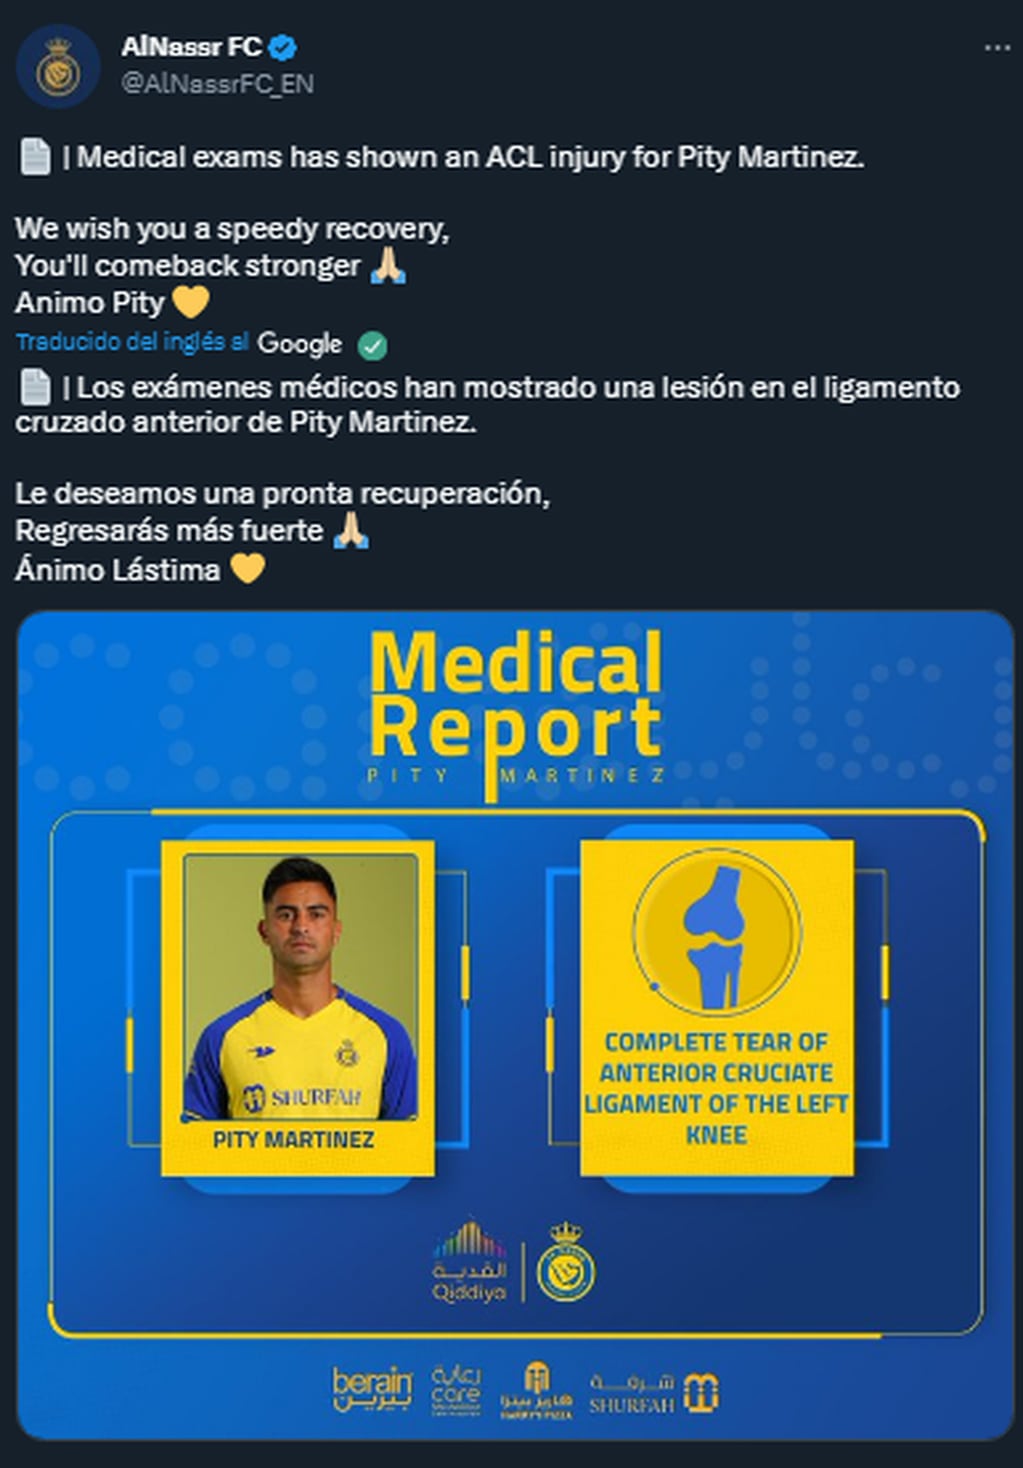 El comunicado del Al Nassr sobre la lesión del Pity Martínez